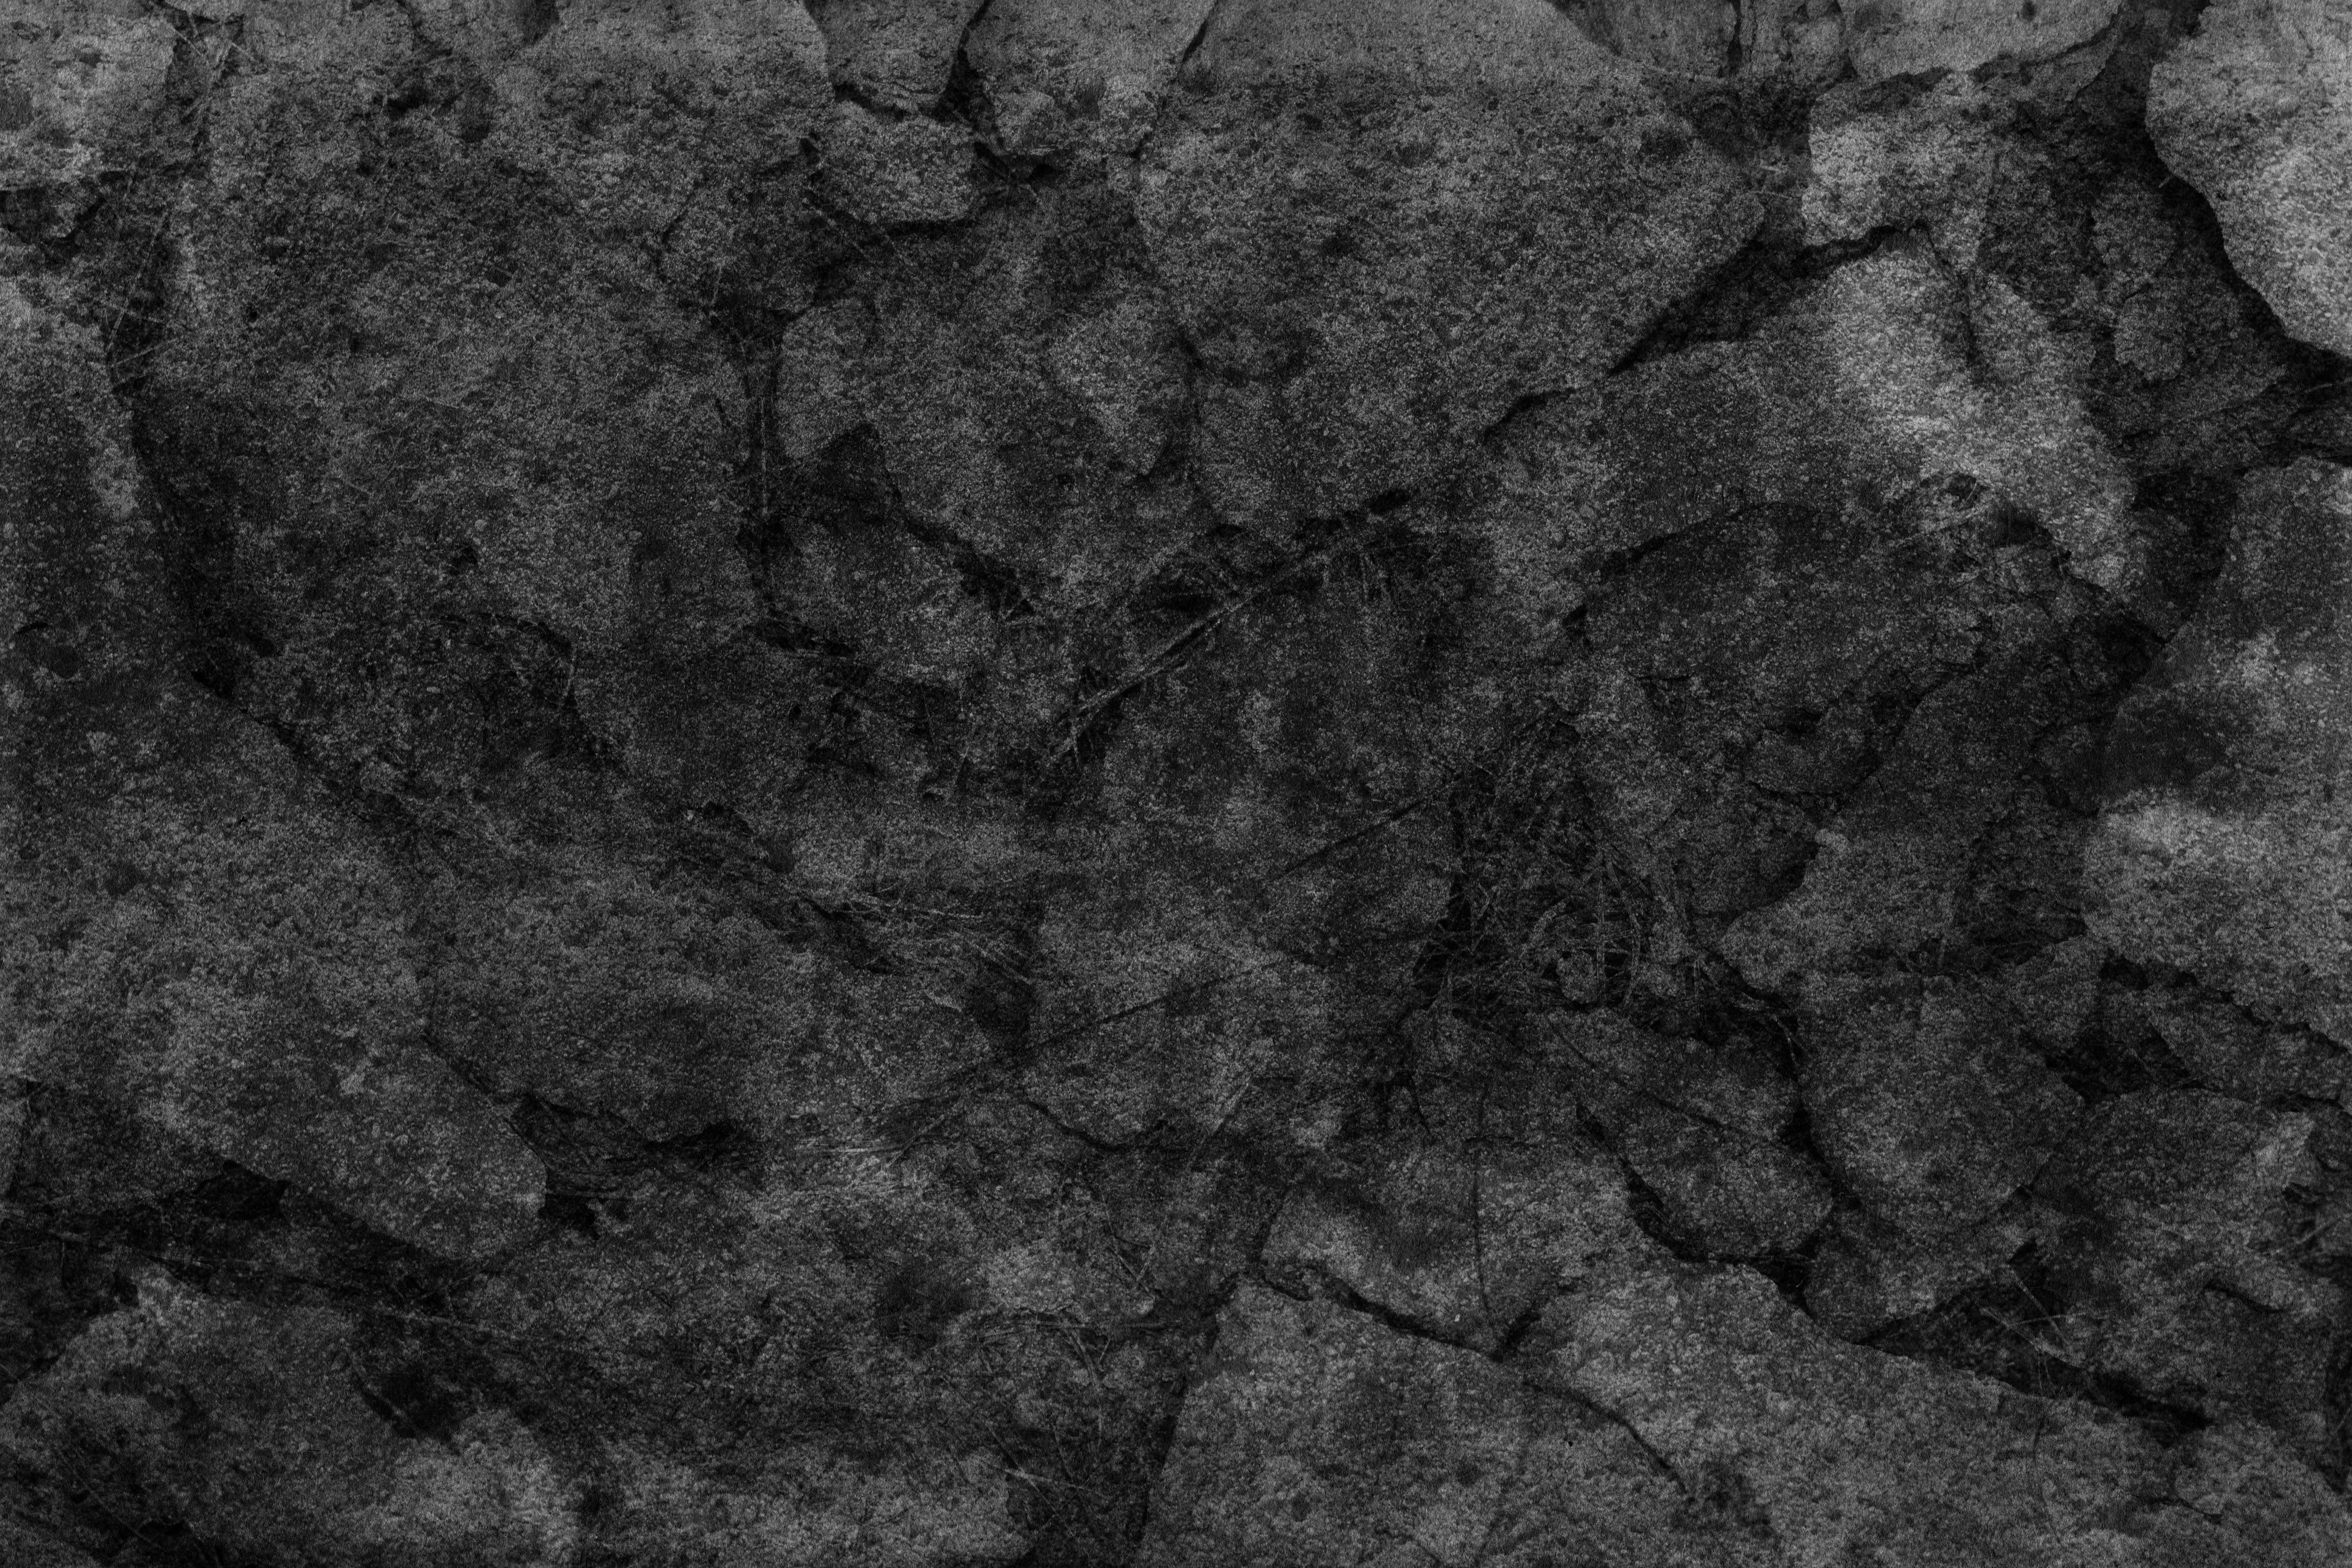 Free Dark Grunge Textures Texture - L+T | Textures | Pinterest ...